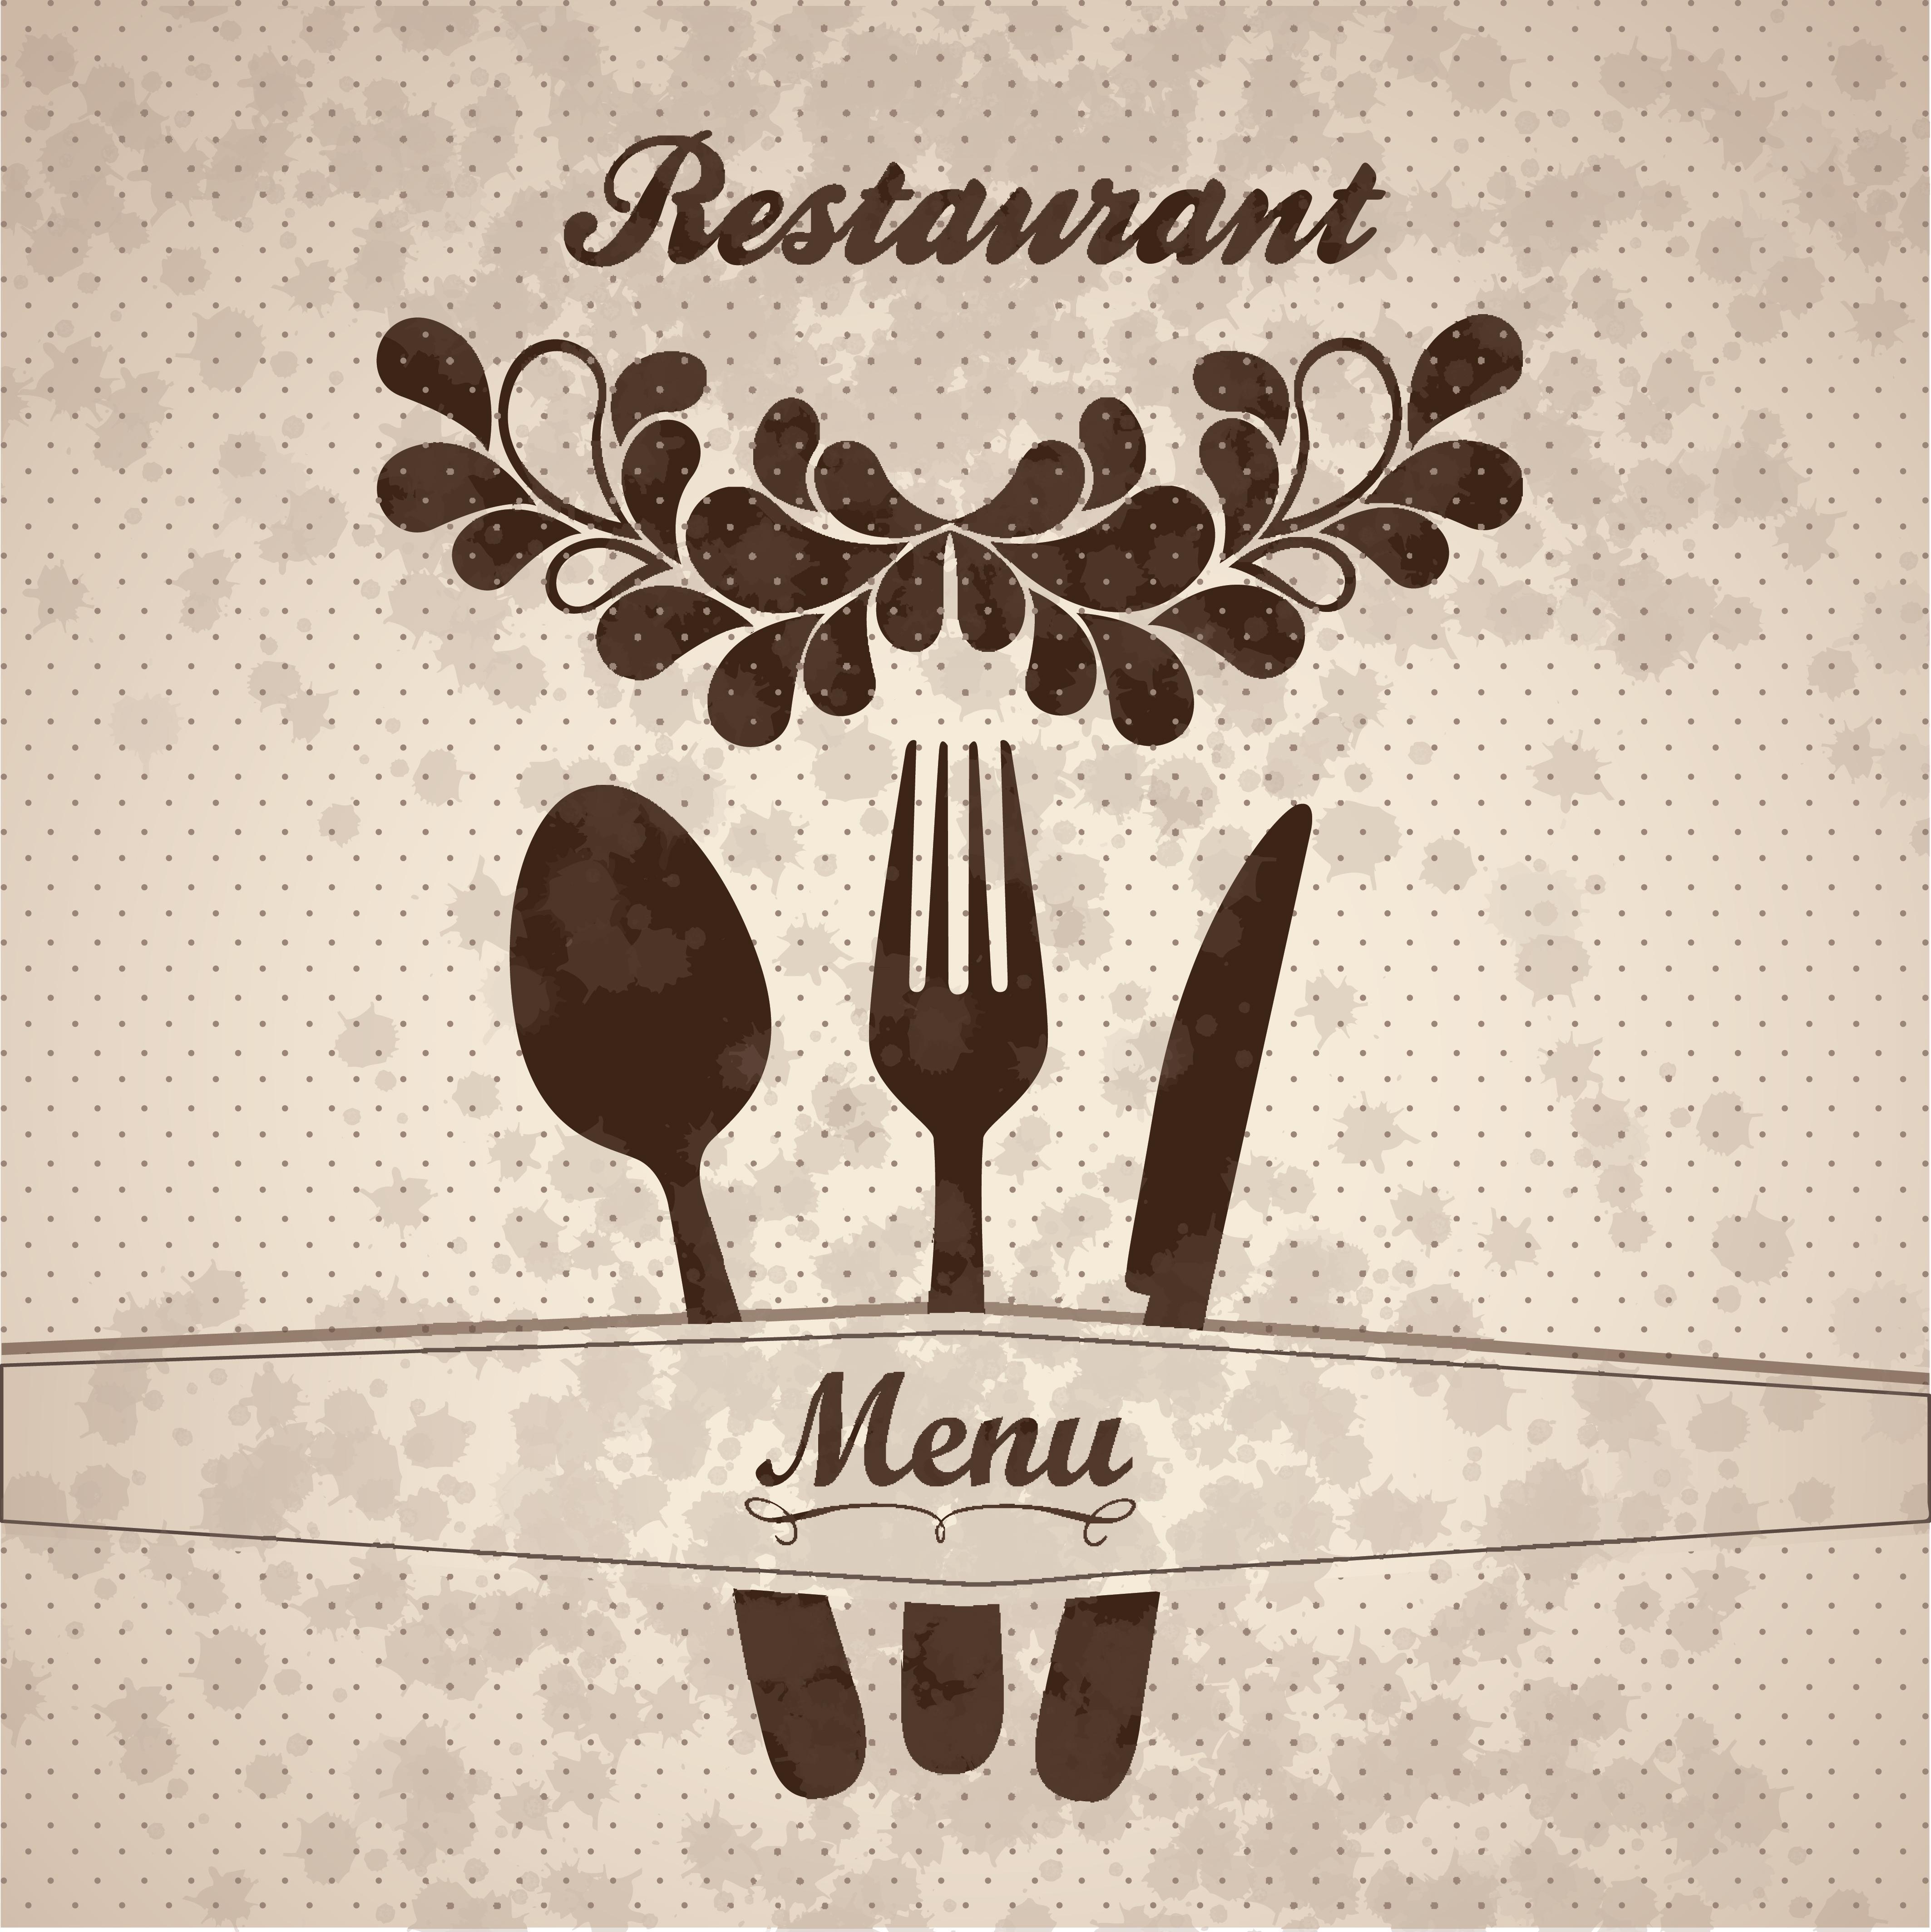 Меню ресторана шаблон. Меню ресторана. Обложка меню для кафе. Оригинальная обложка меню. Макет меню для ресторана.